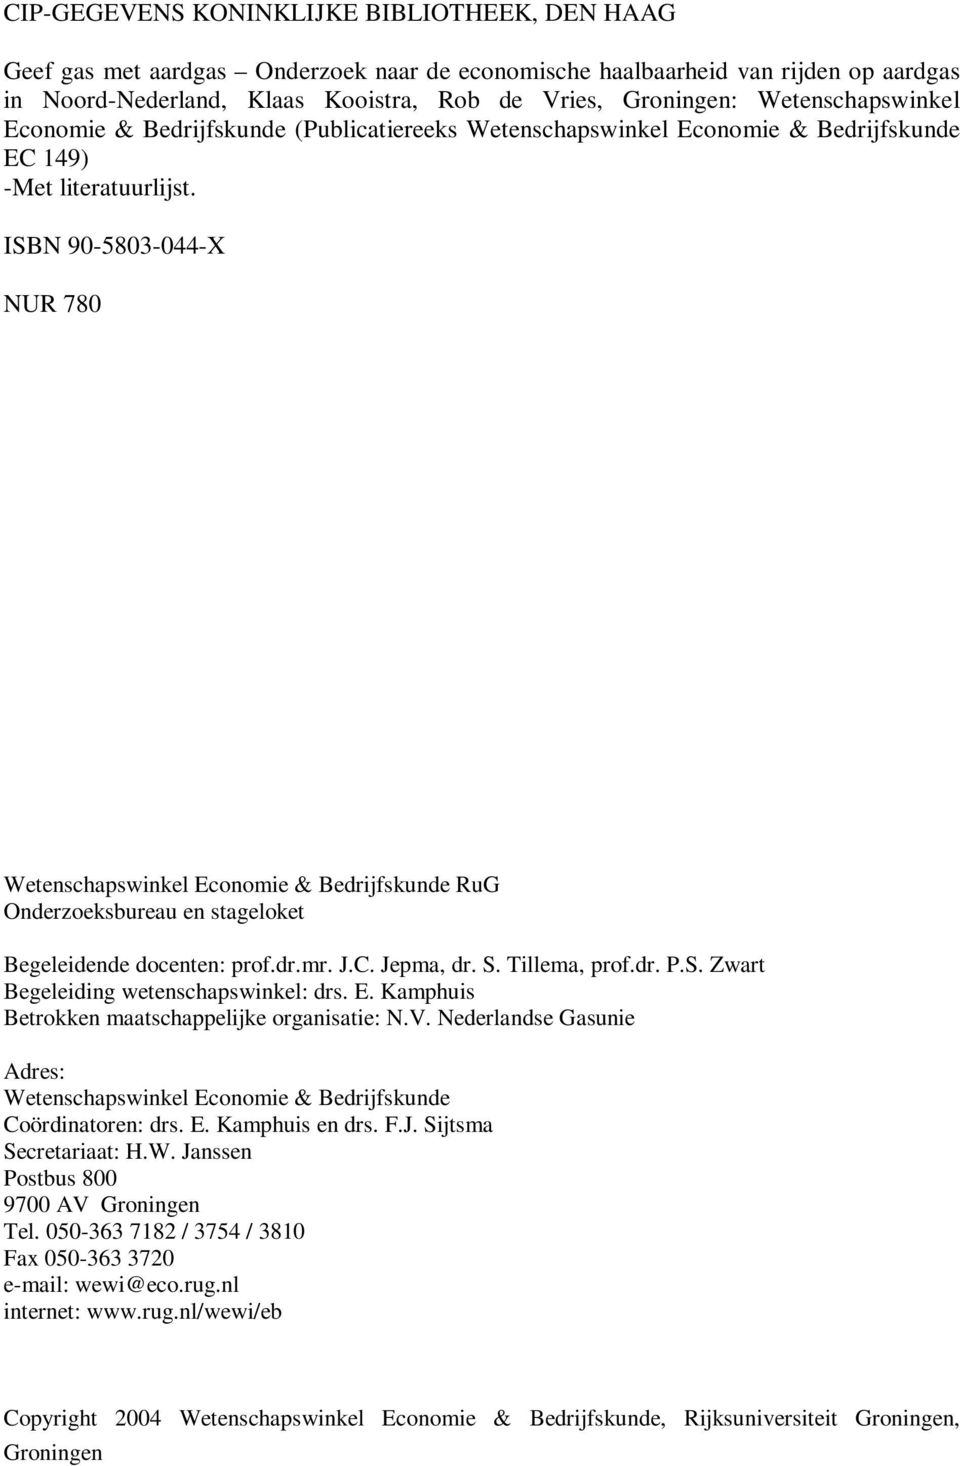 ISBN 90-5803-044-X NUR 780 Wetenschapswinkel Economie & Bedrijfskunde RuG Onderzoeksbureau en stageloket Begeleidende docenten: prof.dr.mr. J.C. Jepma, dr. S. Tillema, prof.dr. P.S. Zwart Begeleiding wetenschapswinkel: drs.